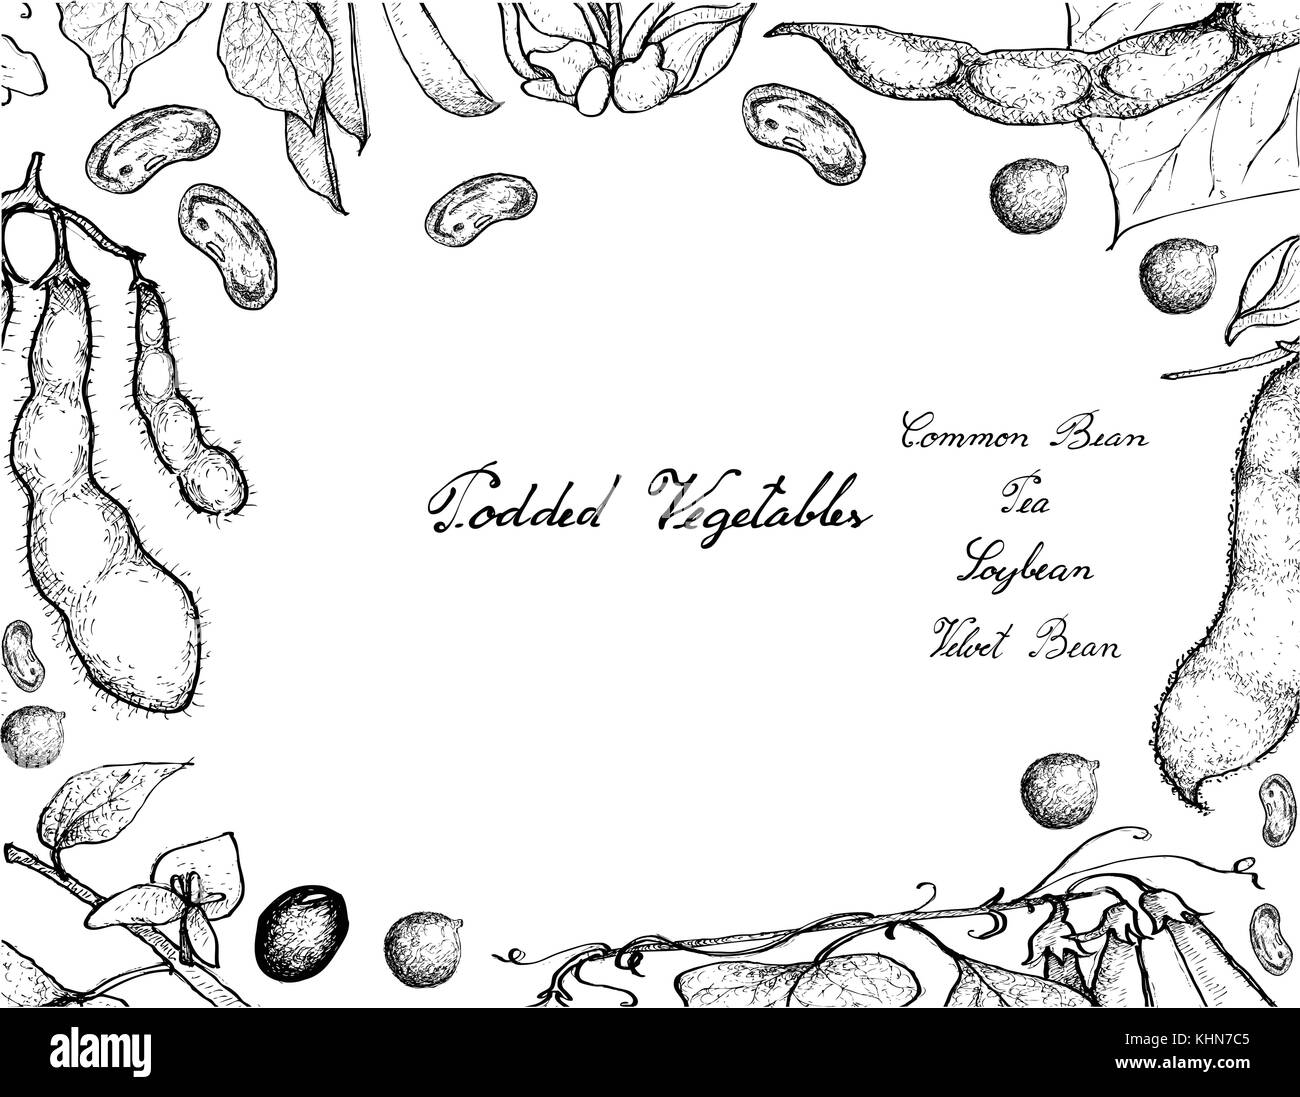 Vegetable, Illustration Frame of Hand Drawn Sketch Fresh Podded Vegetables Isolated on White Background. Stock Vector